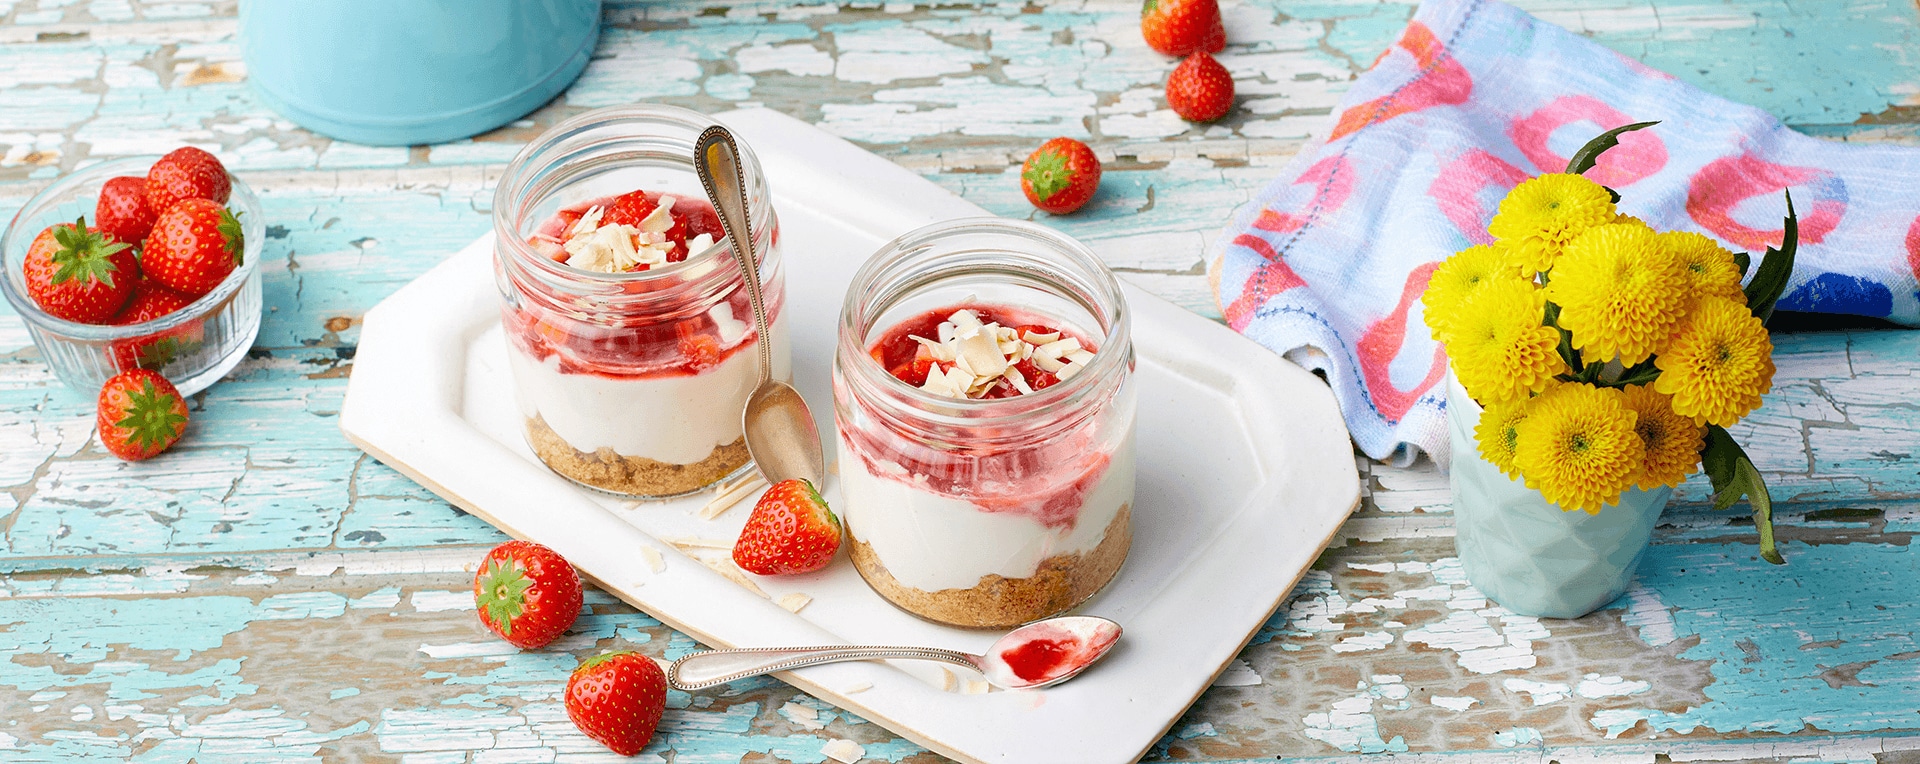 Erdbeer-Cheesecake im Glas